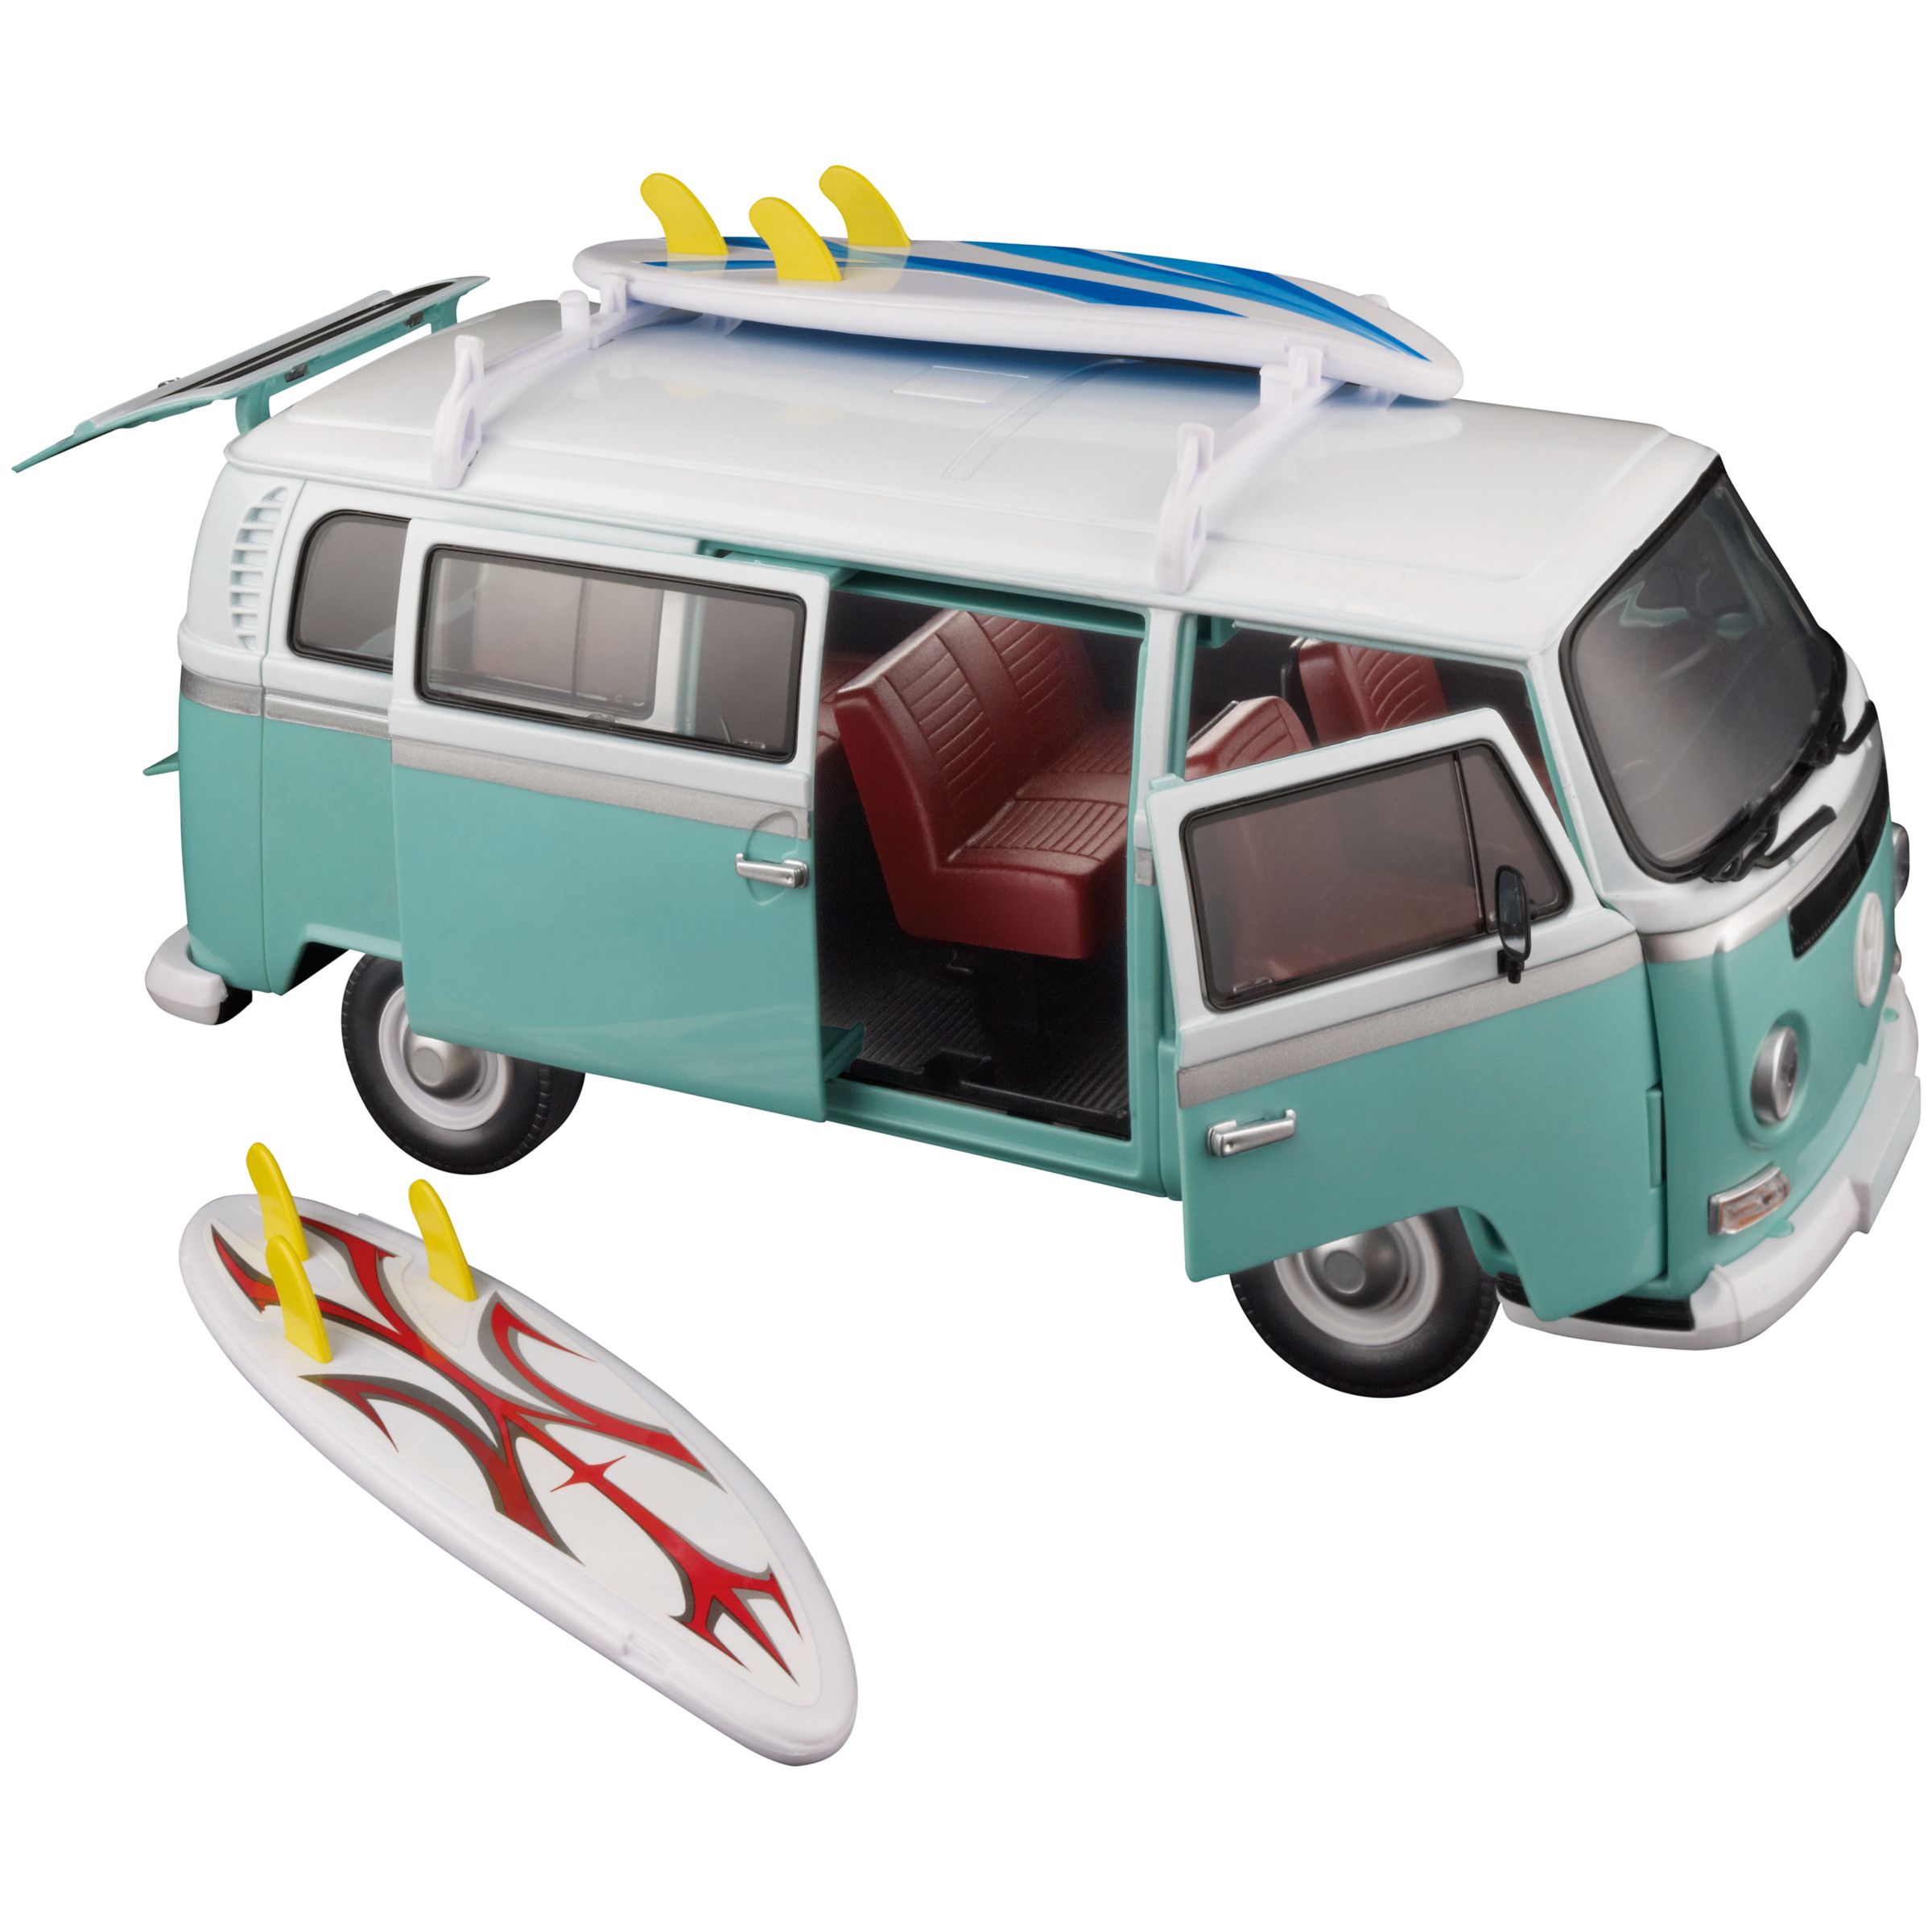 surfer van toy